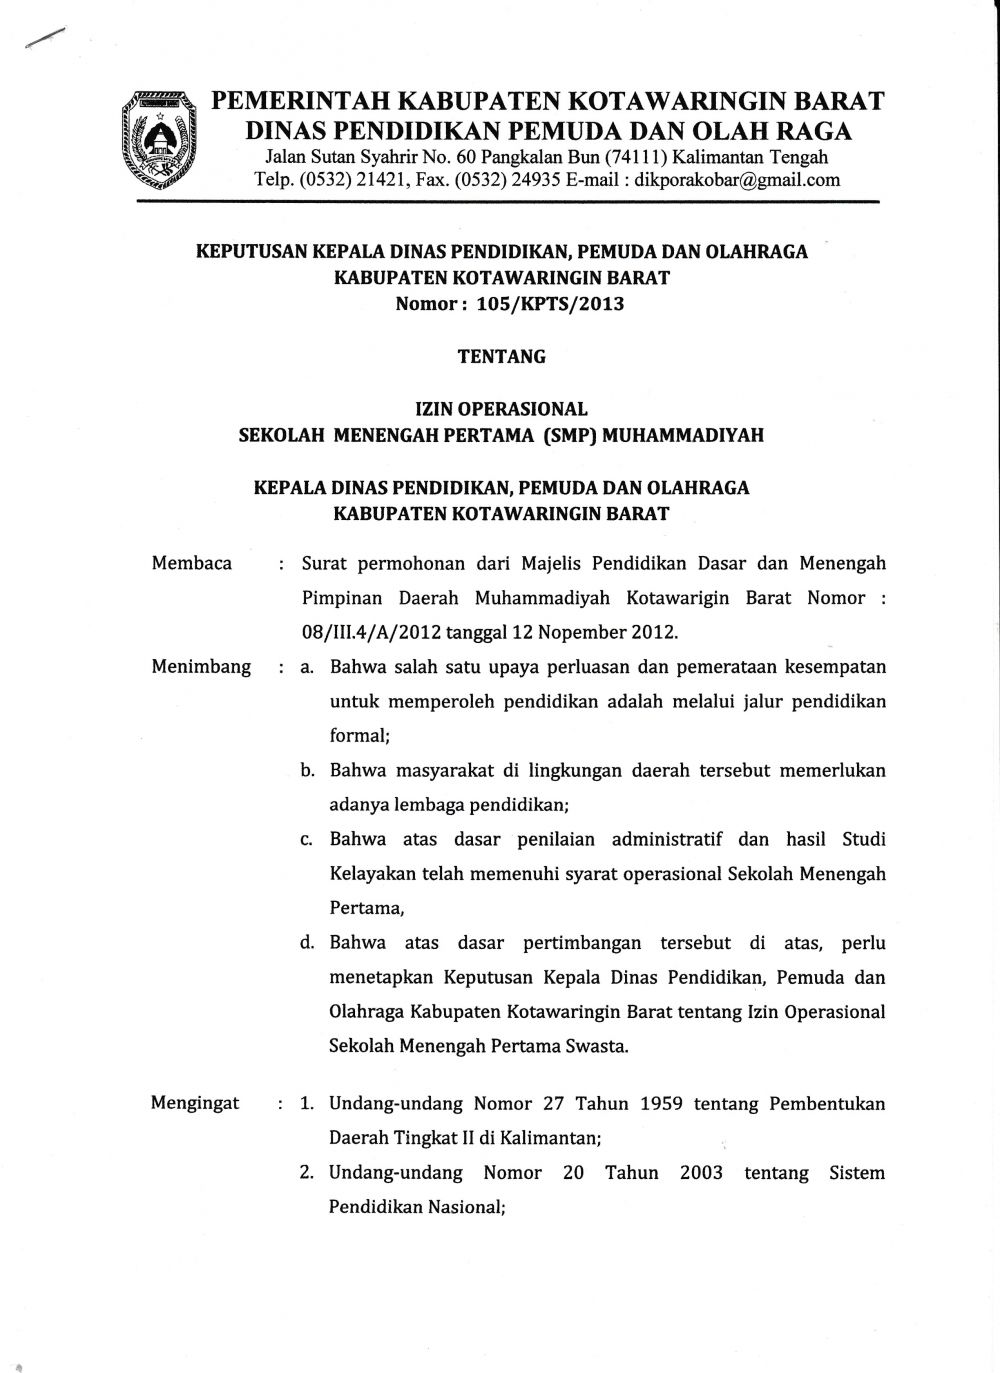 Ijin Operasional Smp Pdm Kabupaten Kotawaringin Barat Muhammadiyah